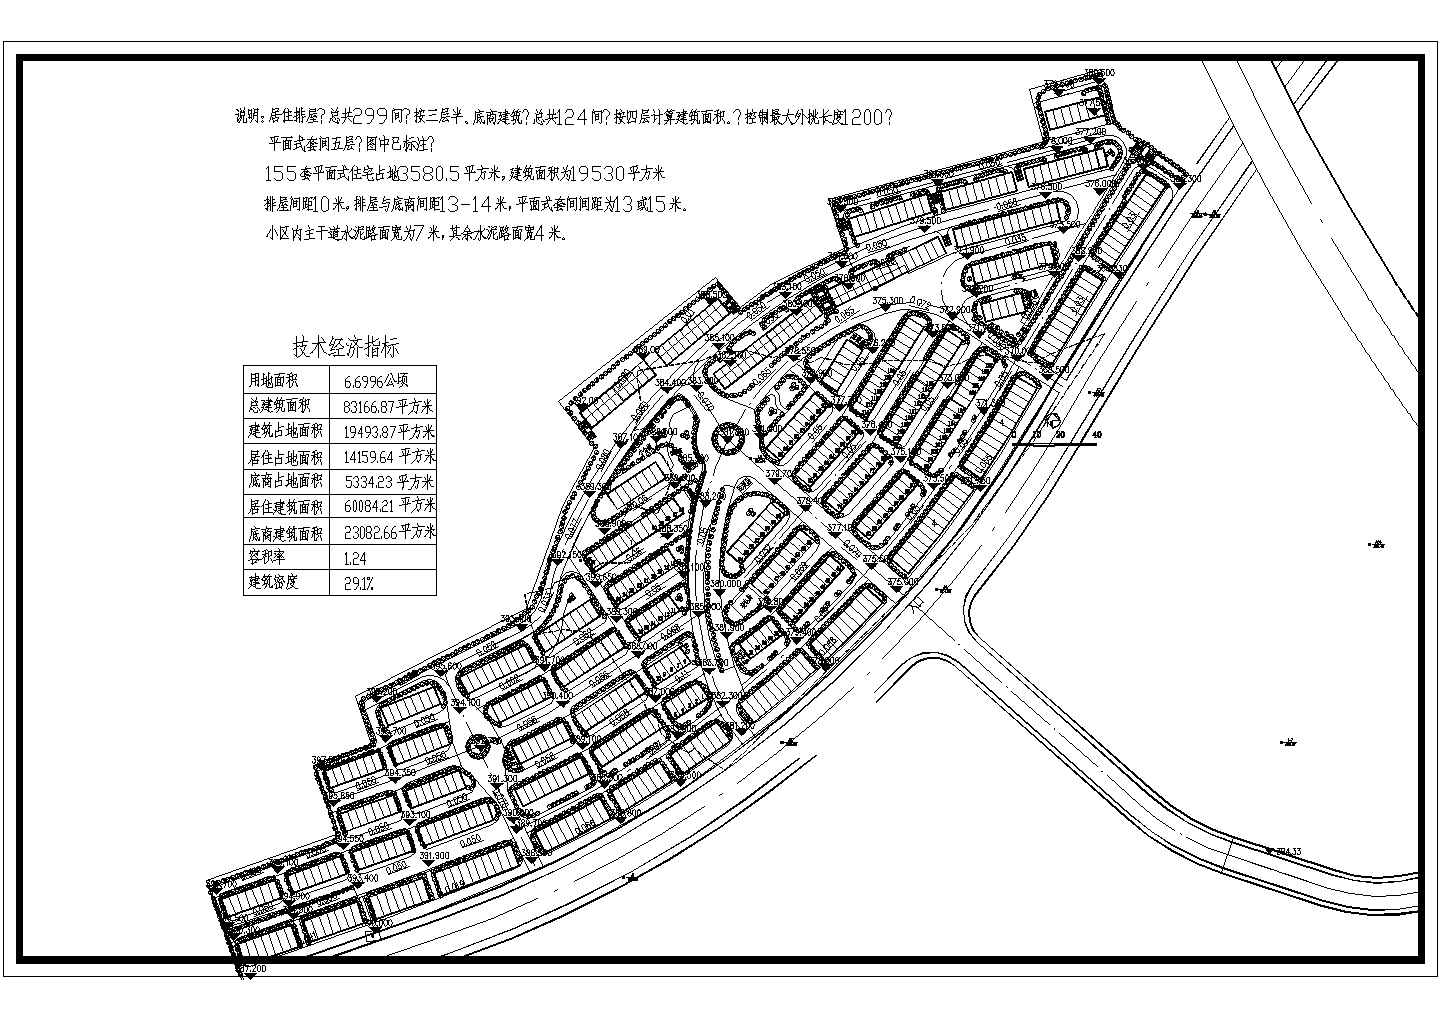 甘肃省东部某城市某小区规划总平面图